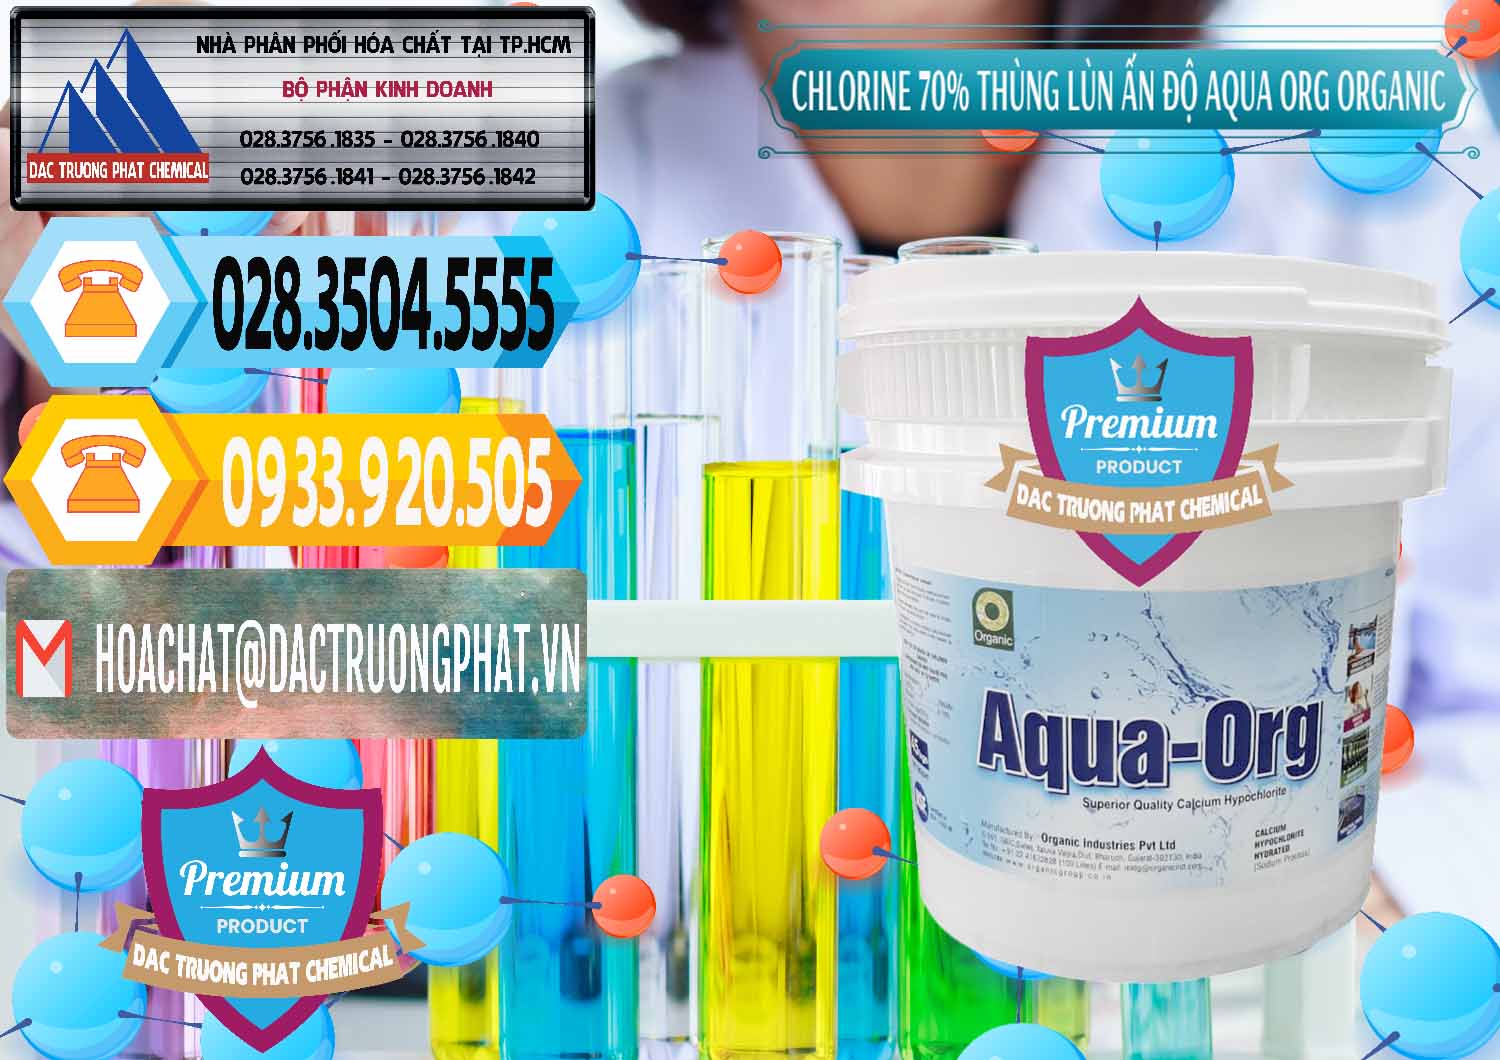 Cung ứng ( bán ) Chlorine – Clorin 70% Thùng Lùn Ấn Độ Aqua ORG Organic India - 0212 - Công ty phân phối ( cung ứng ) hóa chất tại TP.HCM - hoachattayrua.net